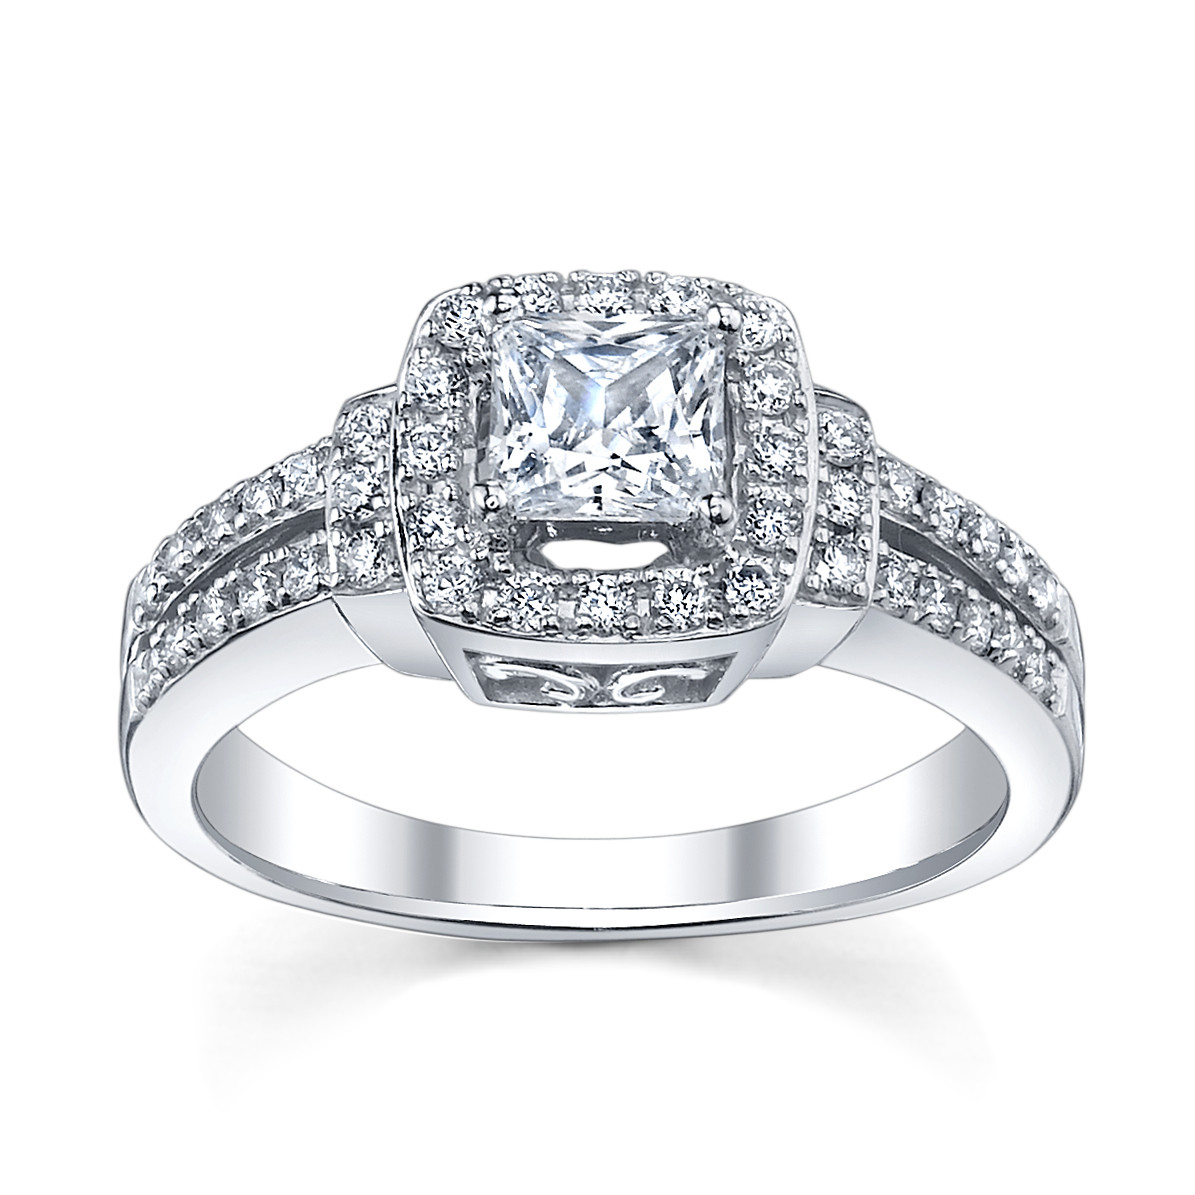 Princess Cut Wedding Ring
 6 Princess Cut Engagement Rings She ll Love Robbins